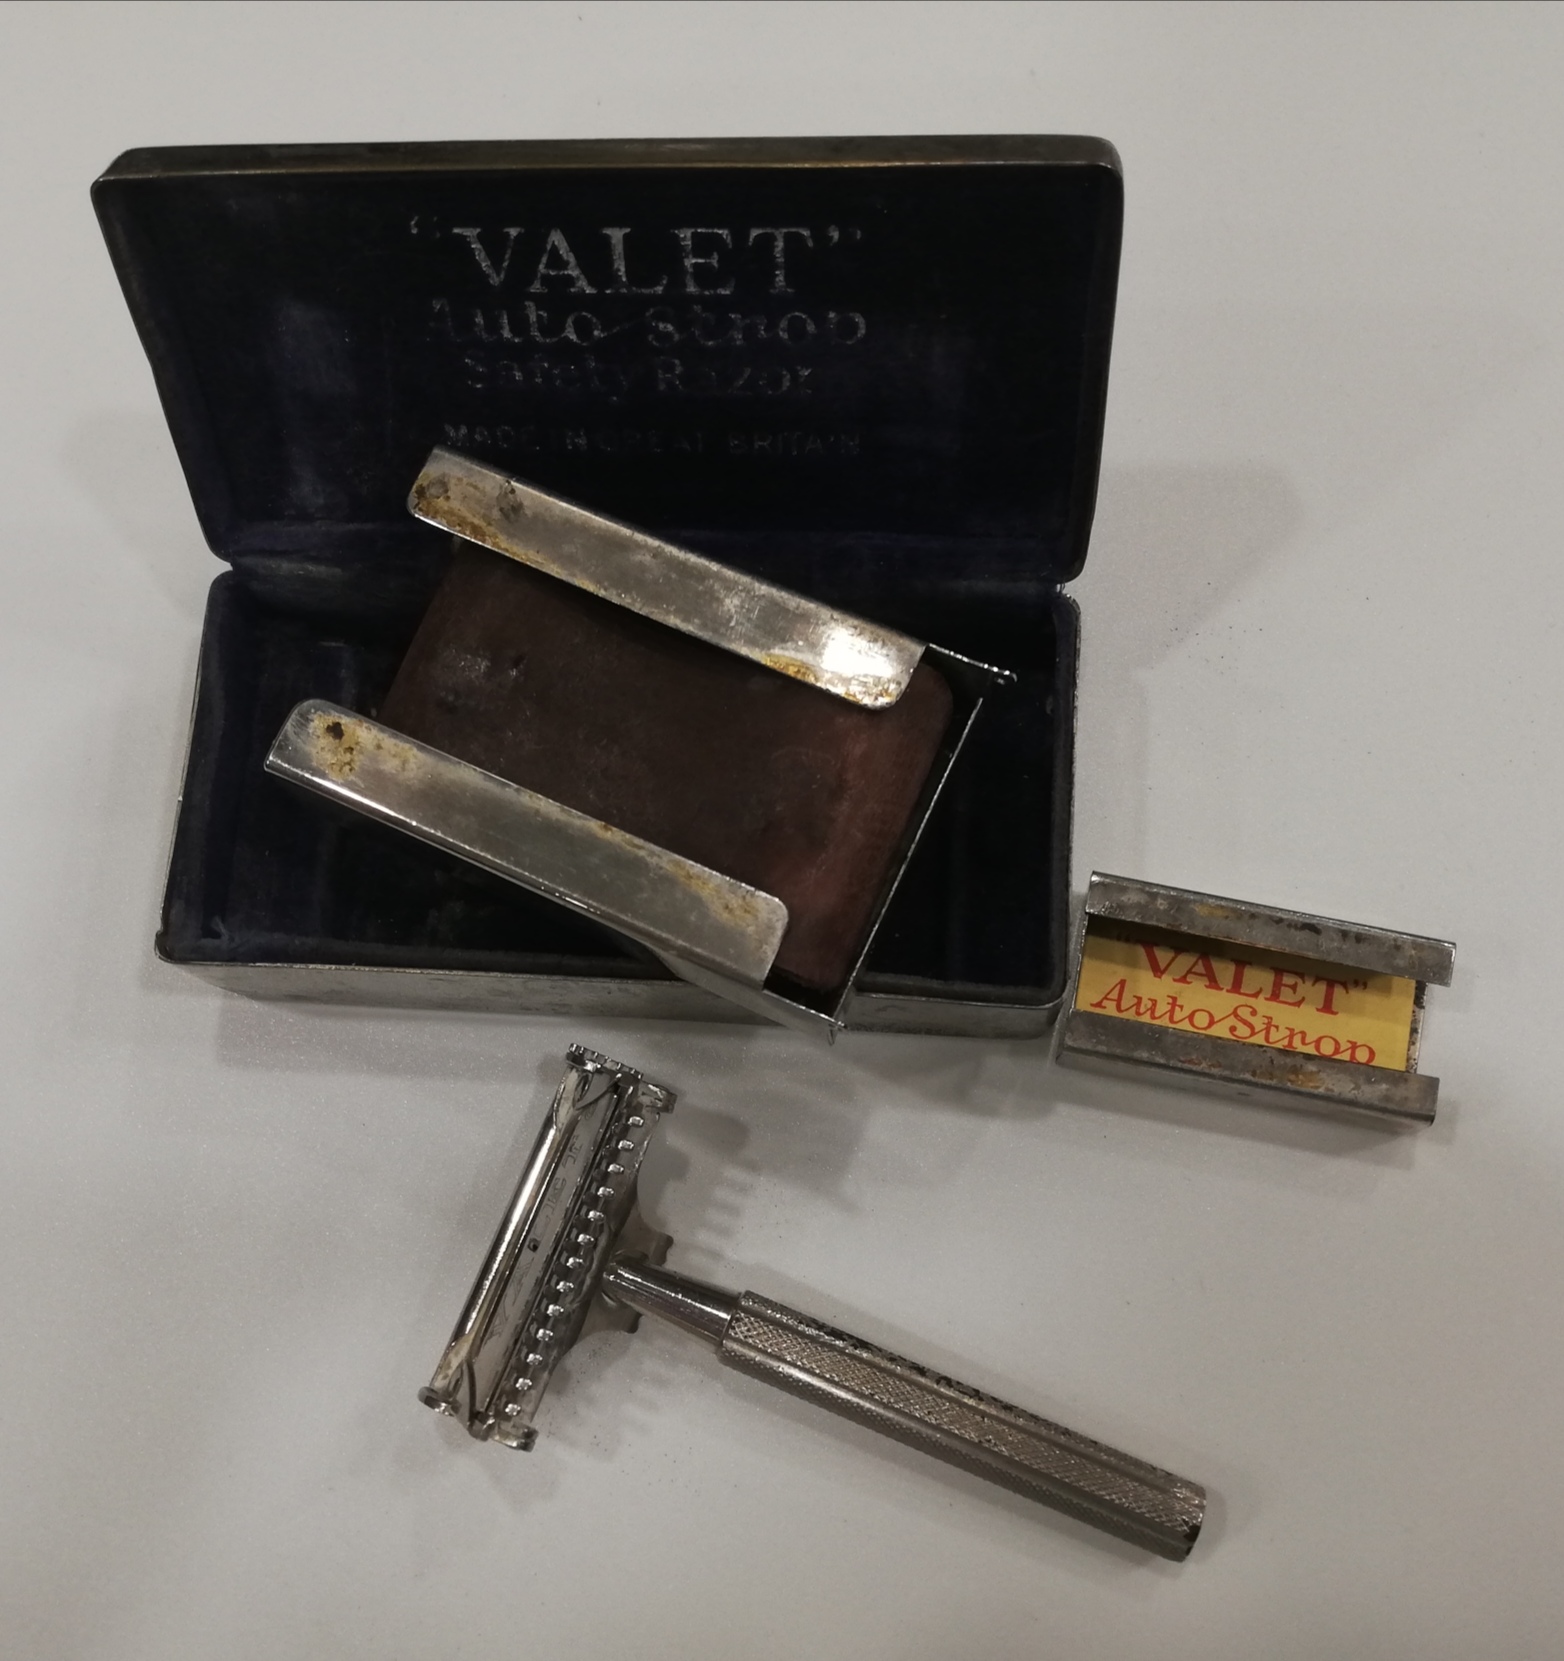 Valet. Set de afeitar en caja metálica (maquinilla, portahojas y afilador)